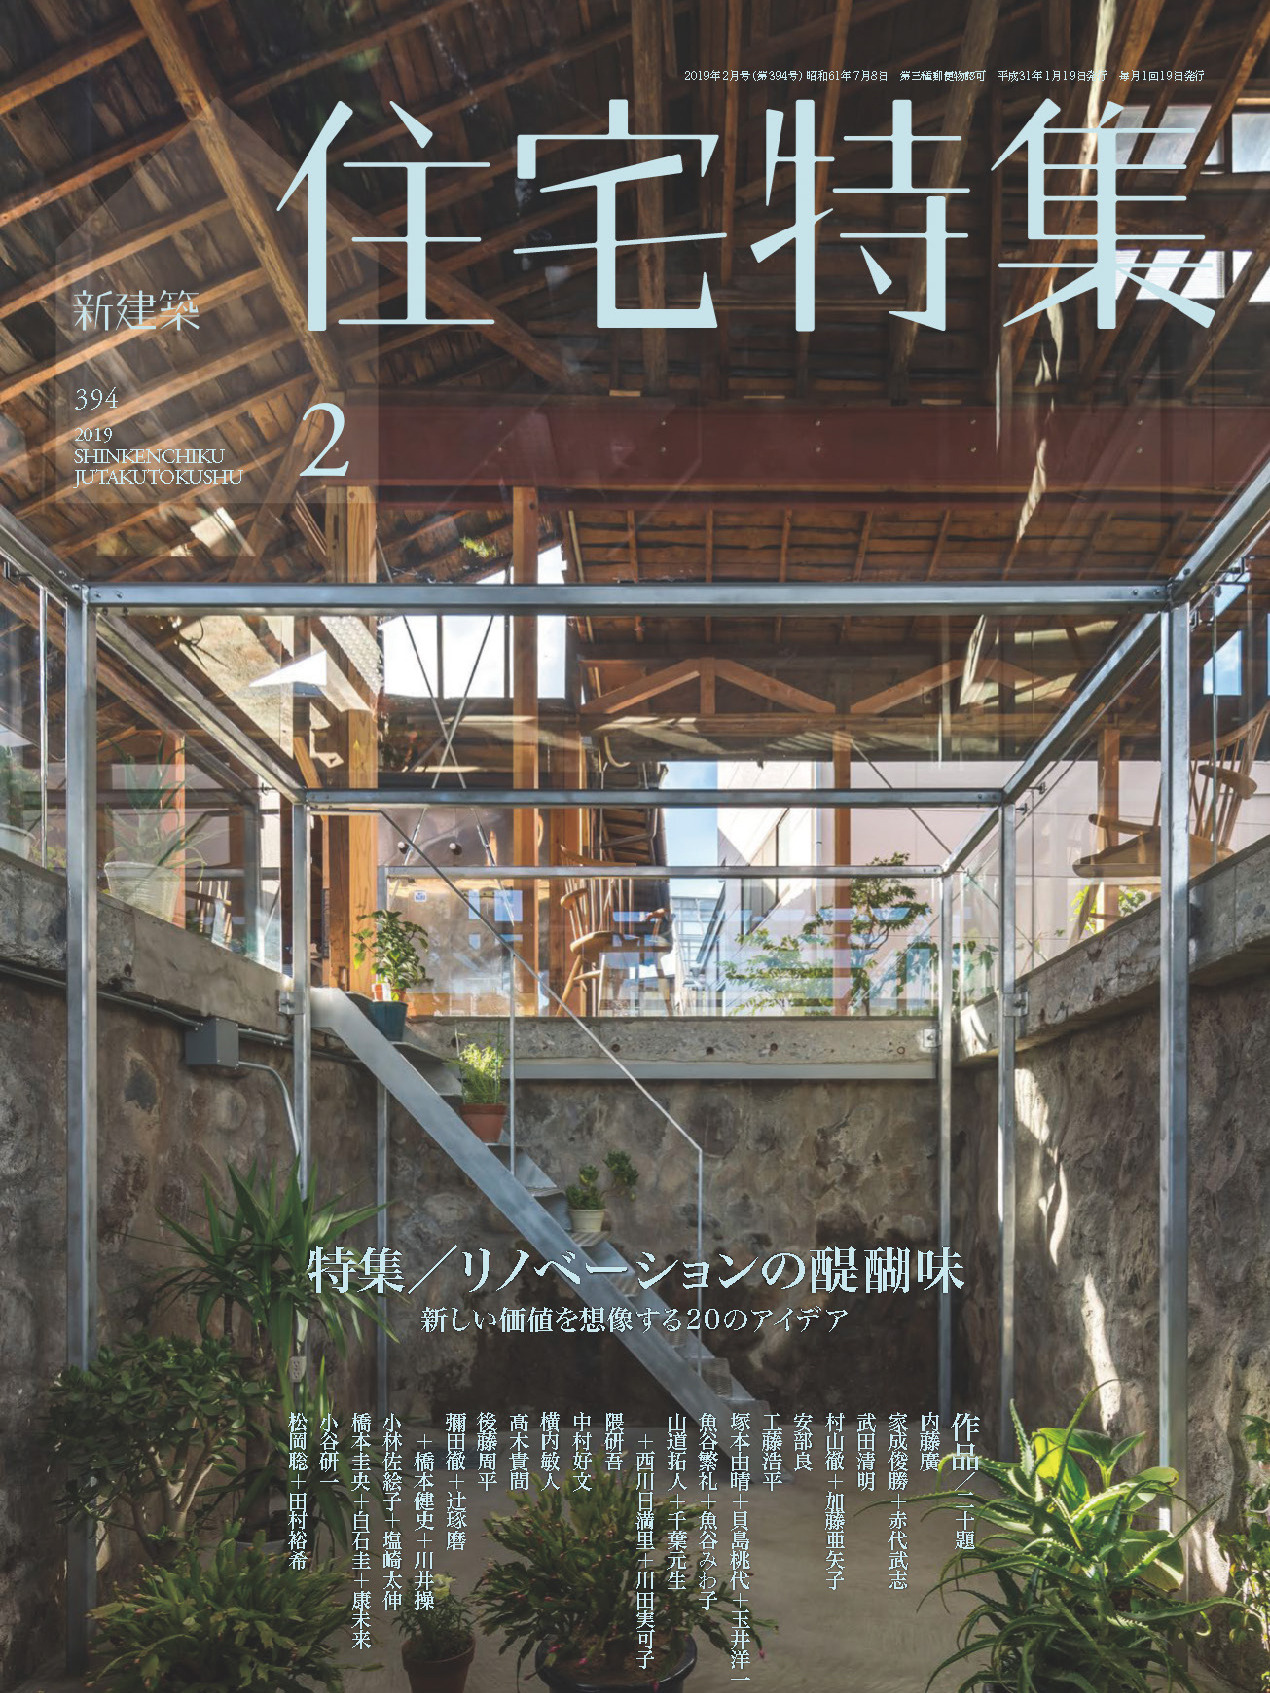 《新建築住宅特集Jutakutokushu》日本版建筑杂志2019年02月号